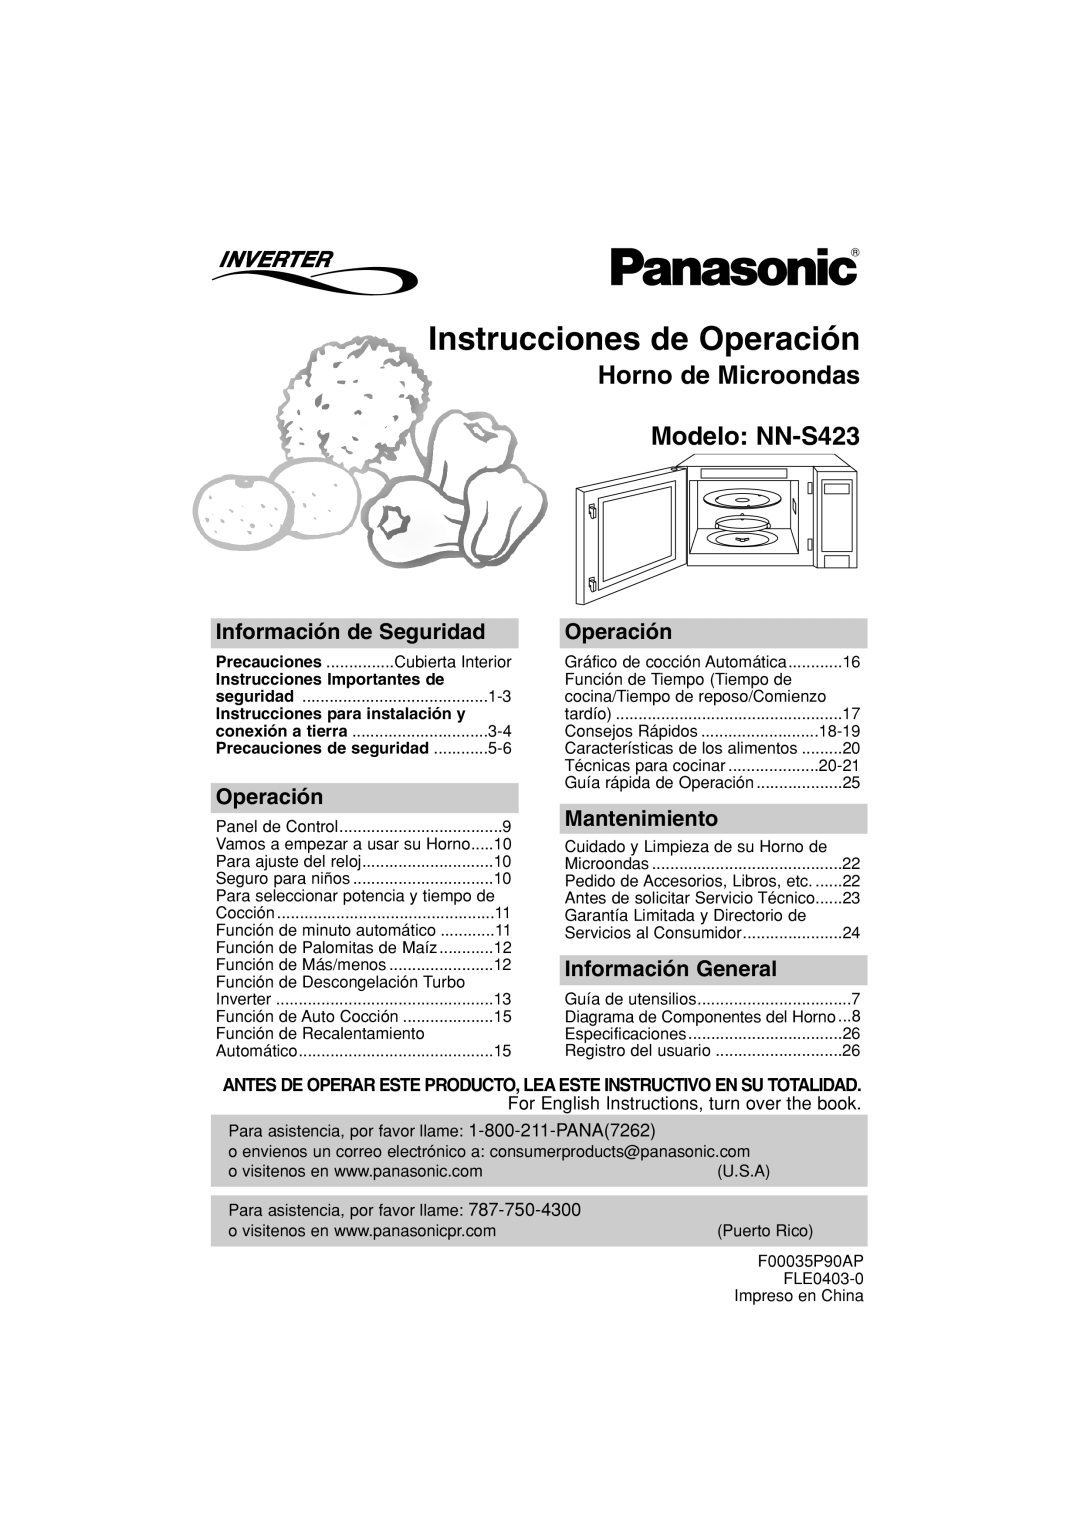 Panasonic Instrucciones de Operación, Horno de Microondas Modelo NN-S423, Información de Seguridad, Mantenimiento 